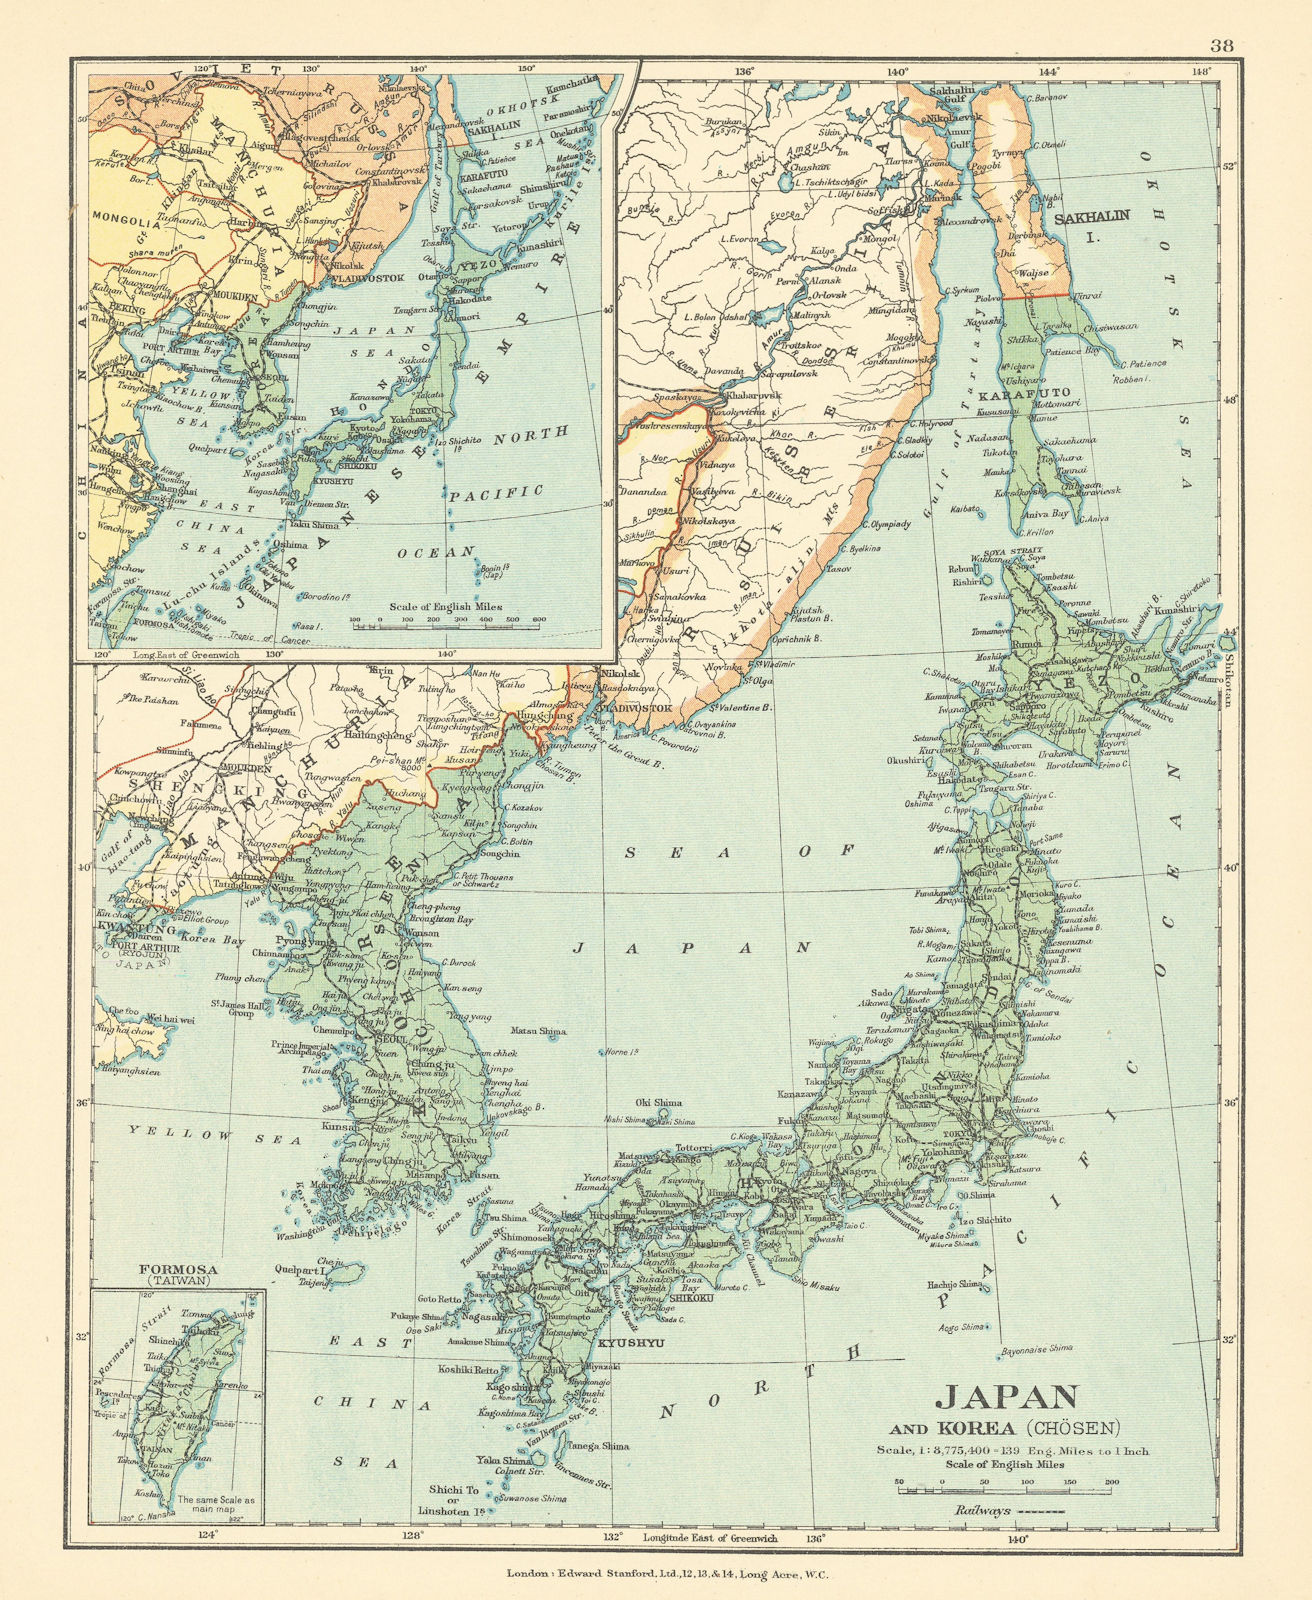 Japan & Korea (Chosen) inc. Southern Sakhalin. Tawain Formosa STANFORD c1925 map